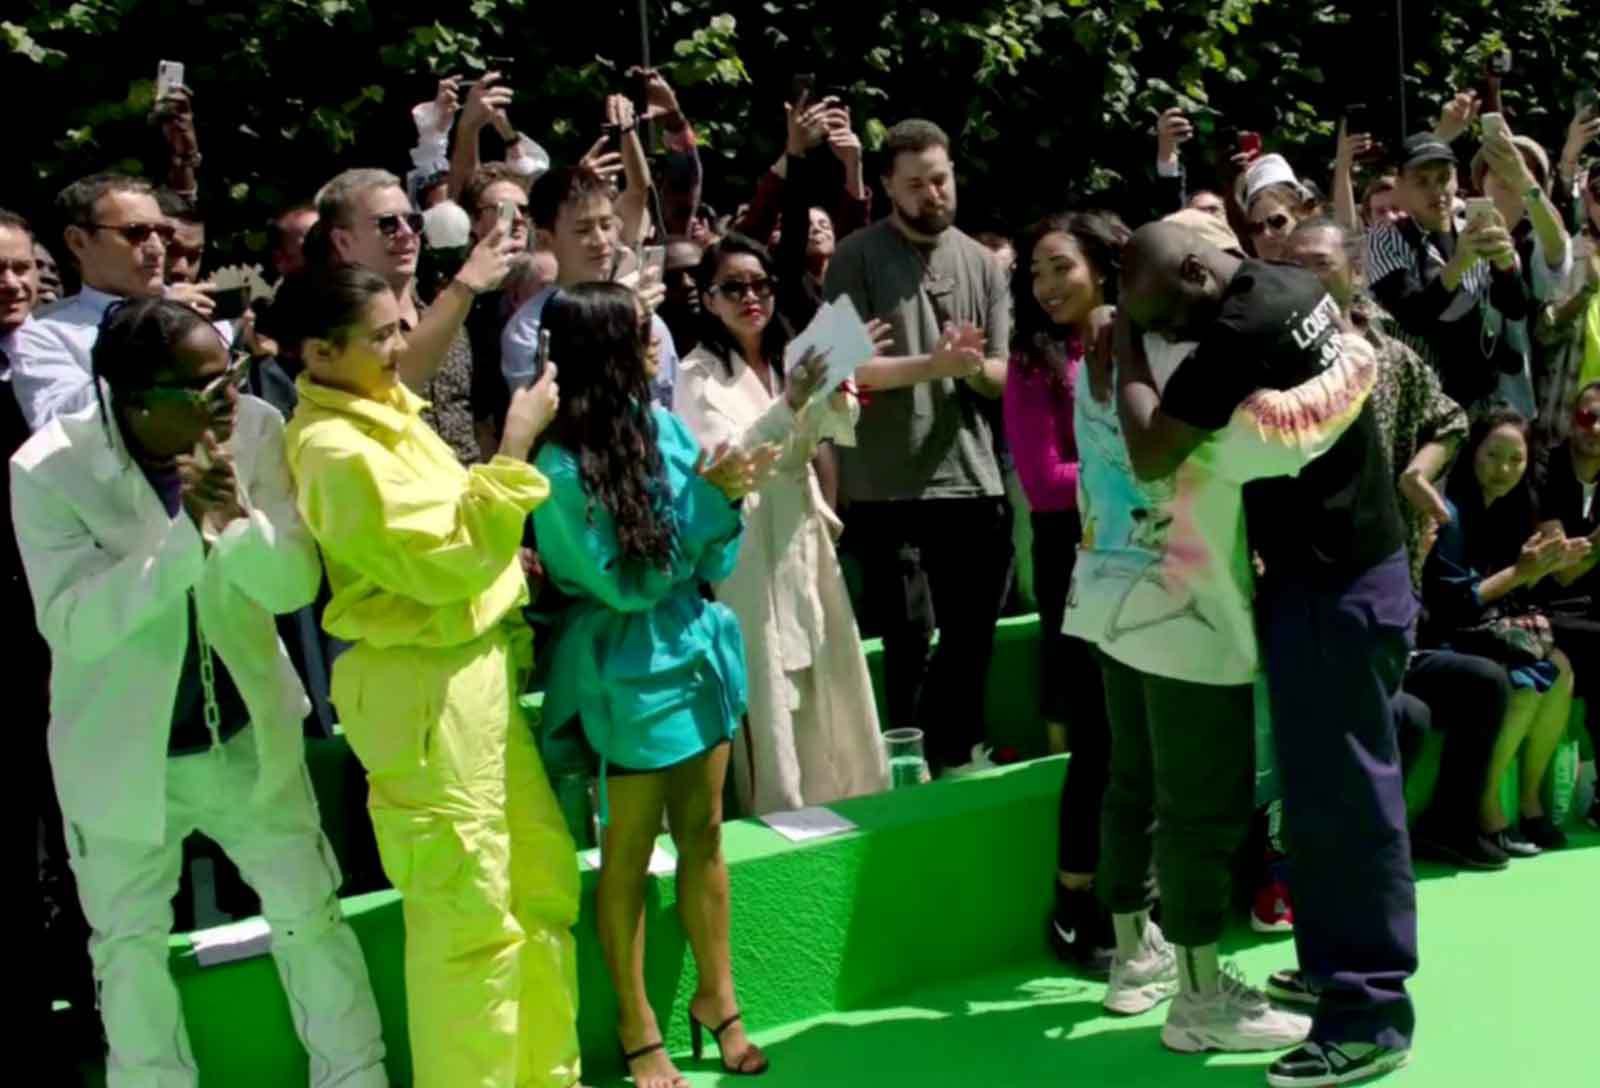 Ra mắt BST đầu tiên cho Louis Vuitton, Virgil Abloh xúc động đến mức ôm chầm Kanye West mà nức nở - Ảnh 4.